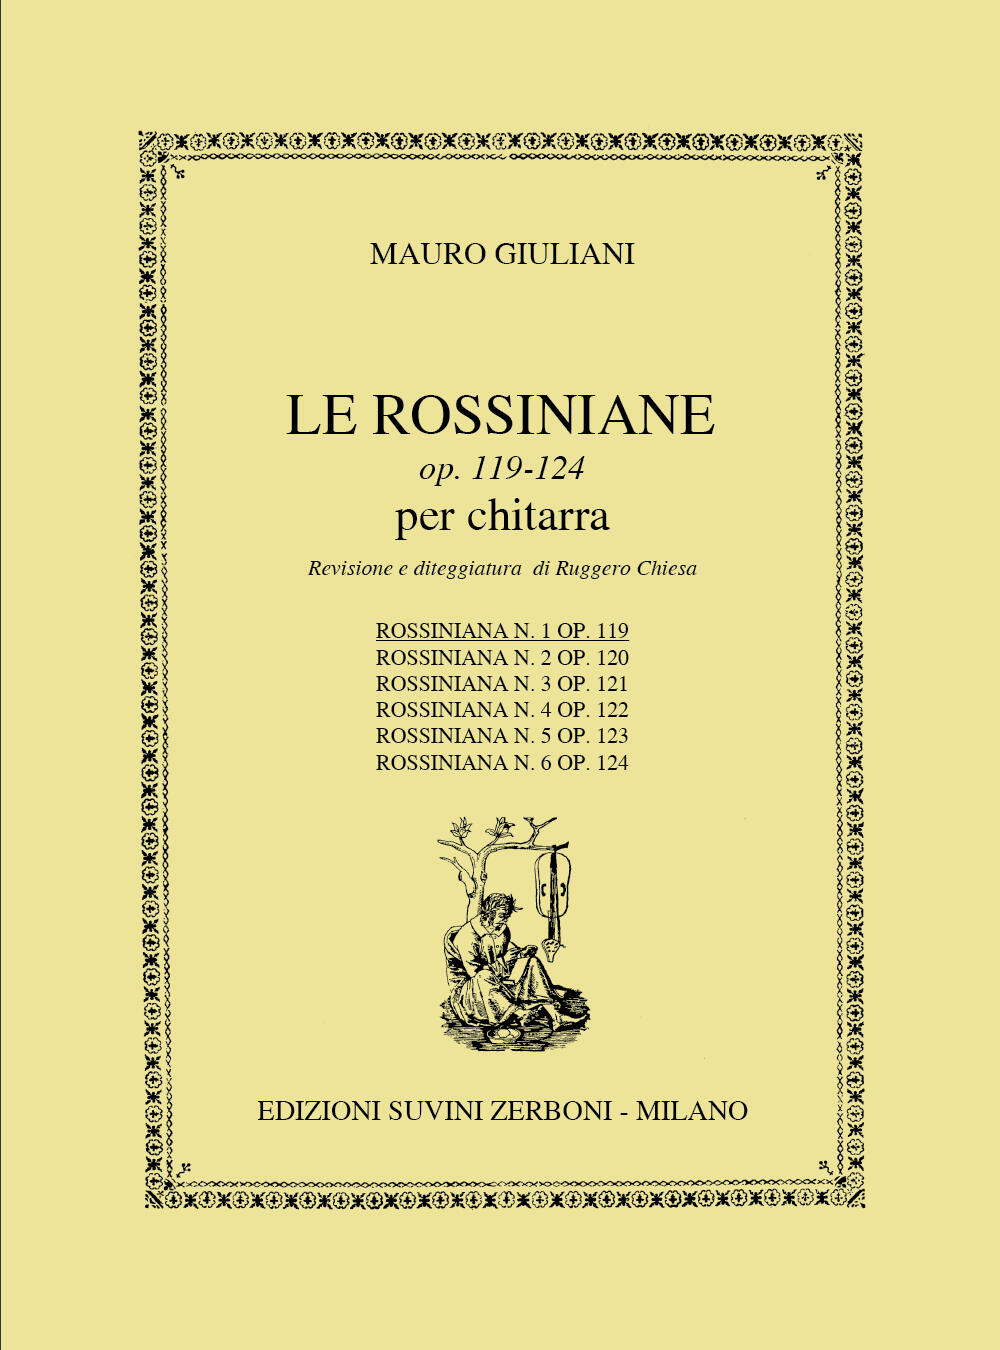 Rossiniana 1 Opus 119 : photo 1